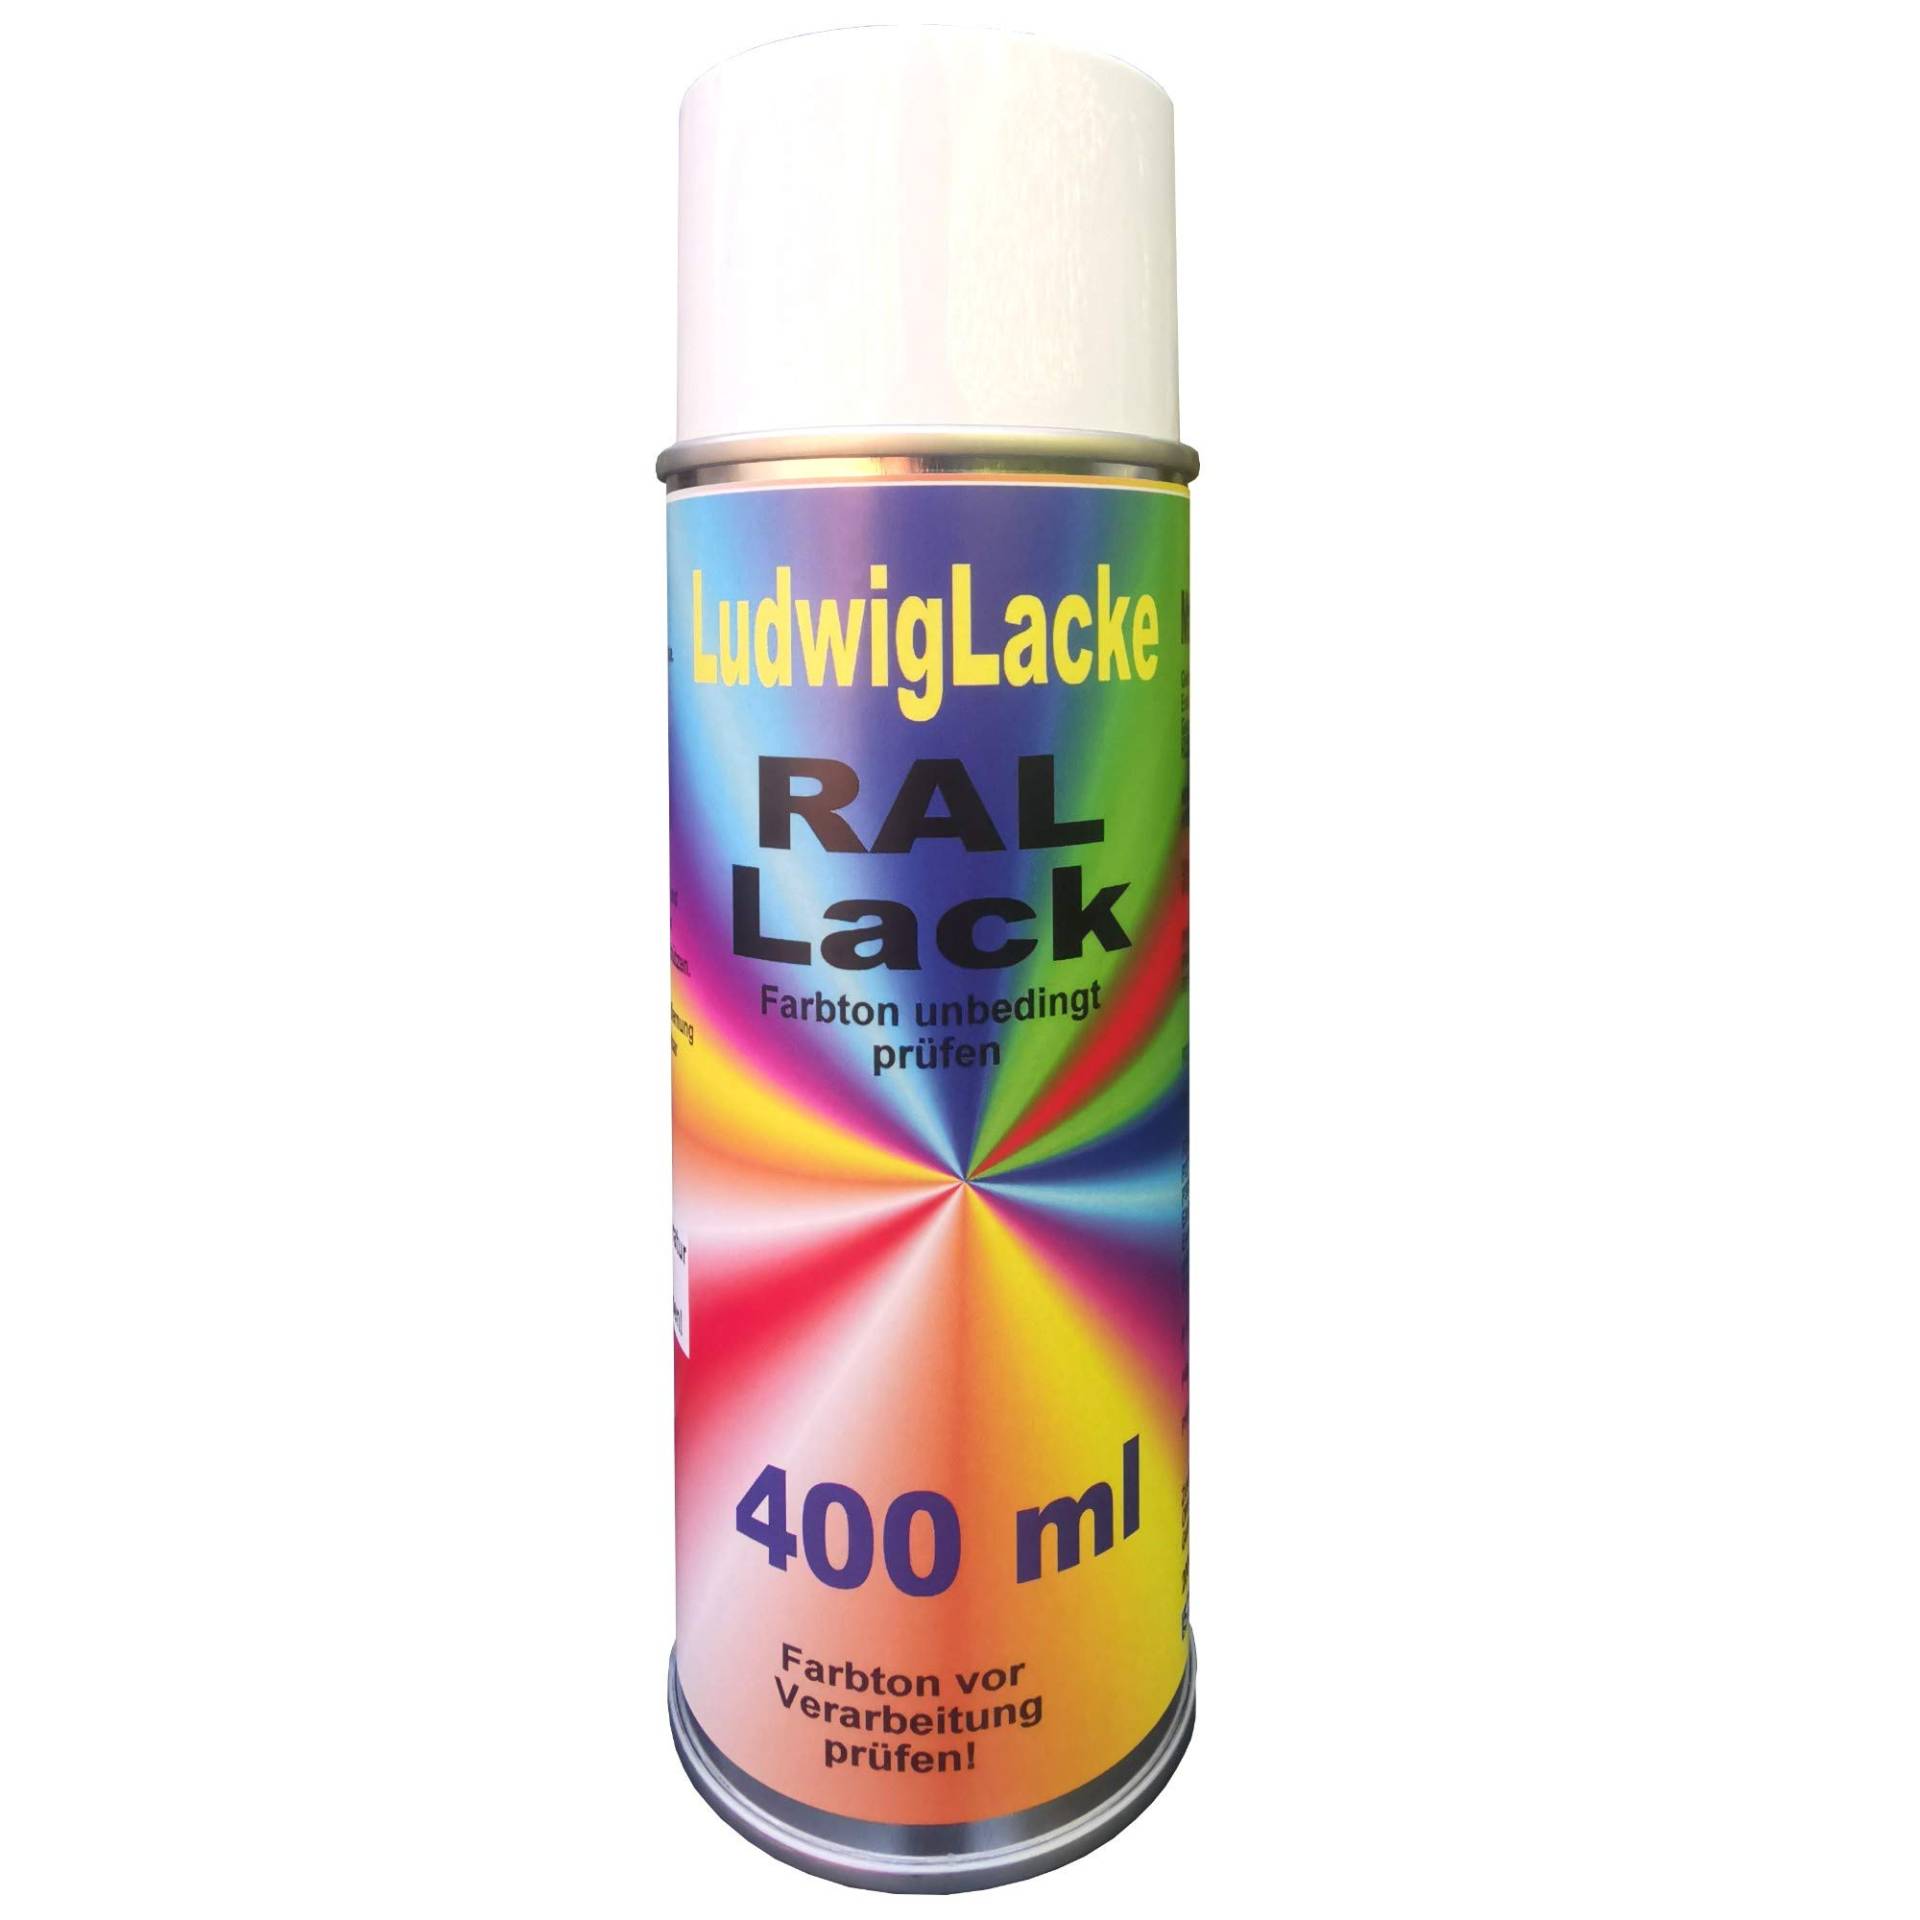 Heizkörperlack Spray RAL 1001 BEIGE 400 ml von Ludwiglacke